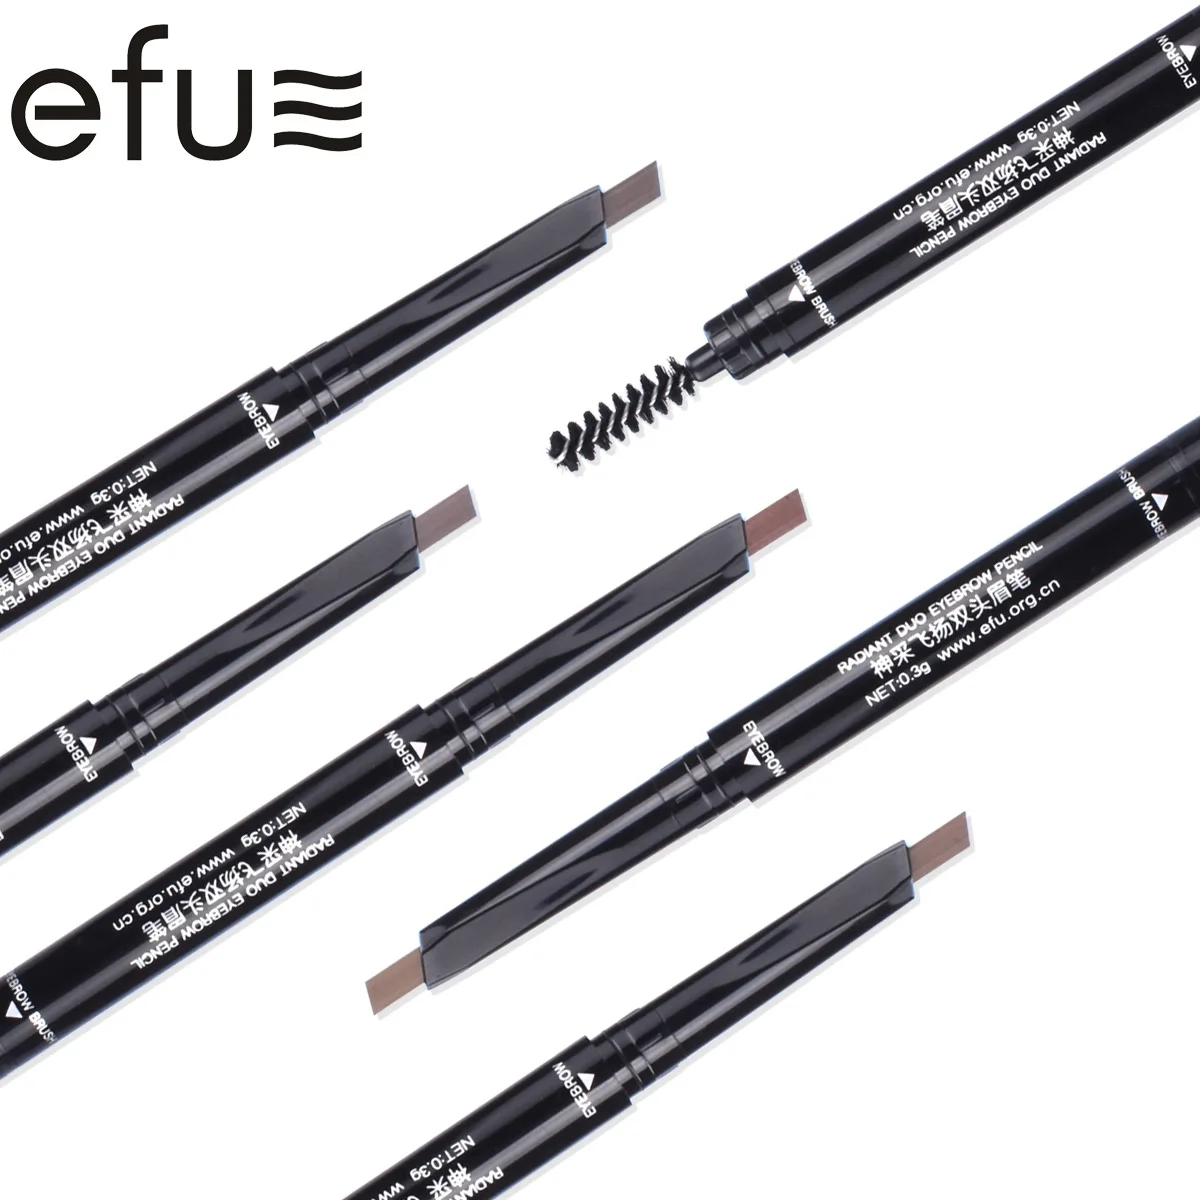 5 цветов 24 часа стойкий двуглавый карандаш для бровей 0,3 г Макияж глаз бренд EFU#7561-7565